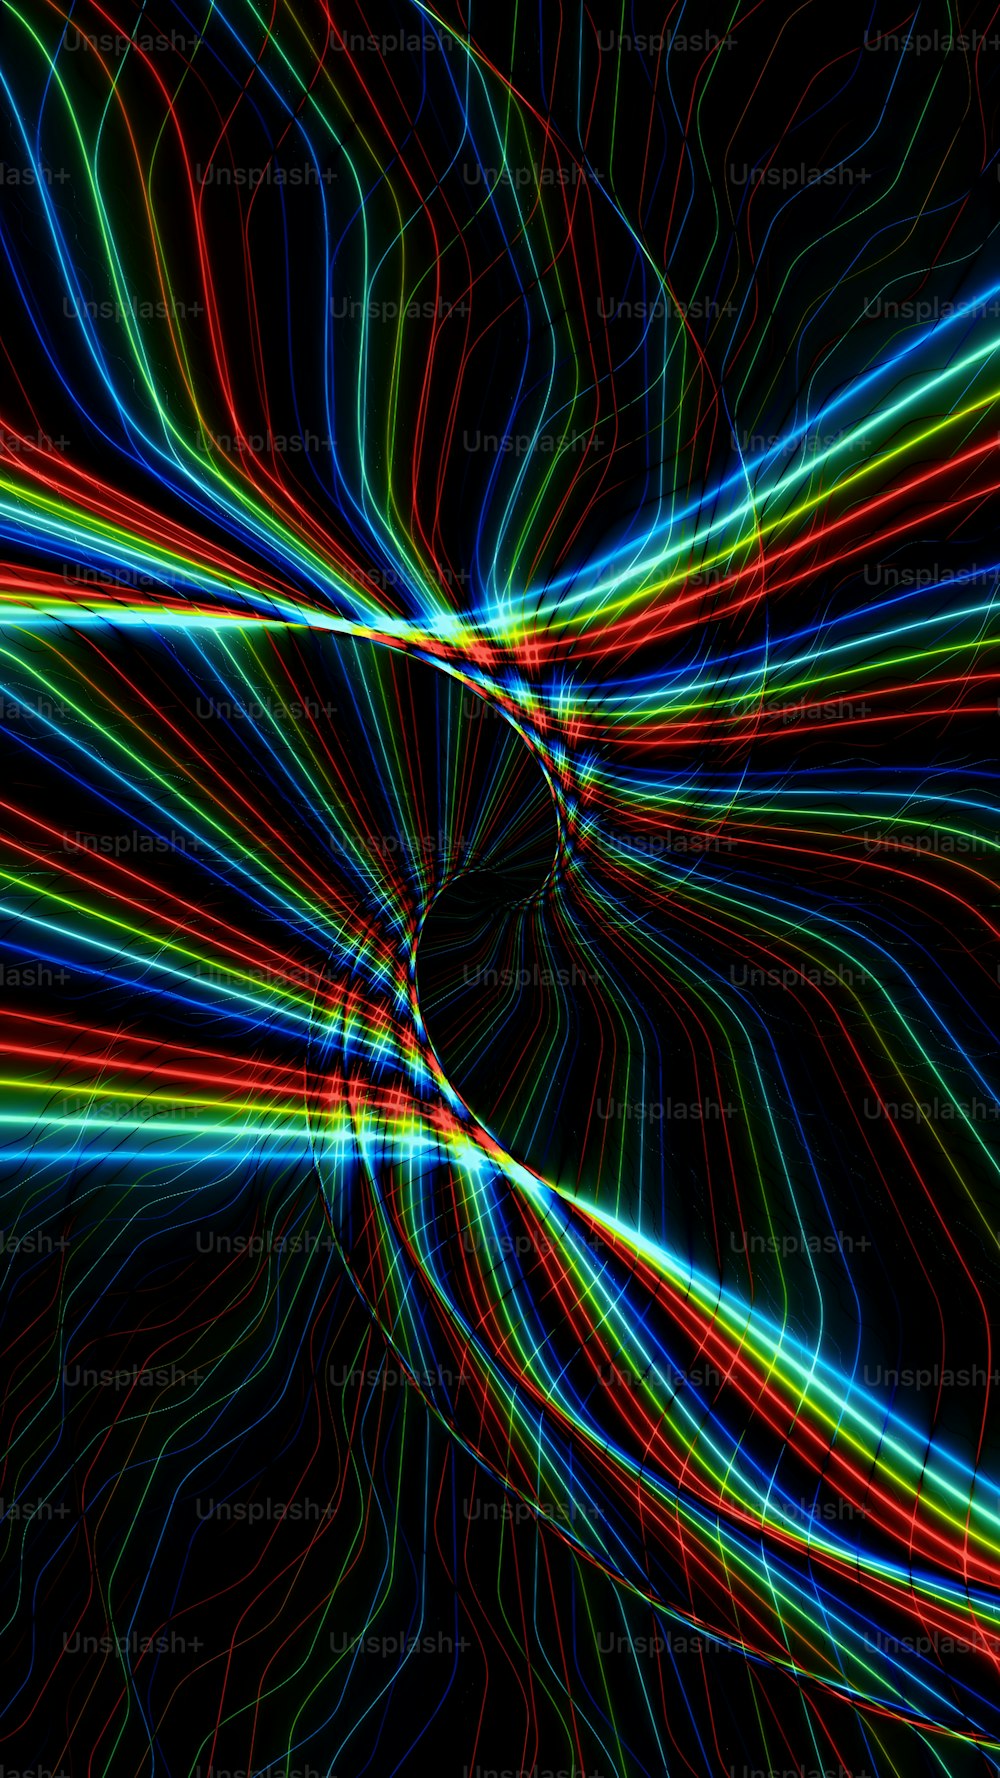 Una imagen abstracta de una espiral de líneas de colores